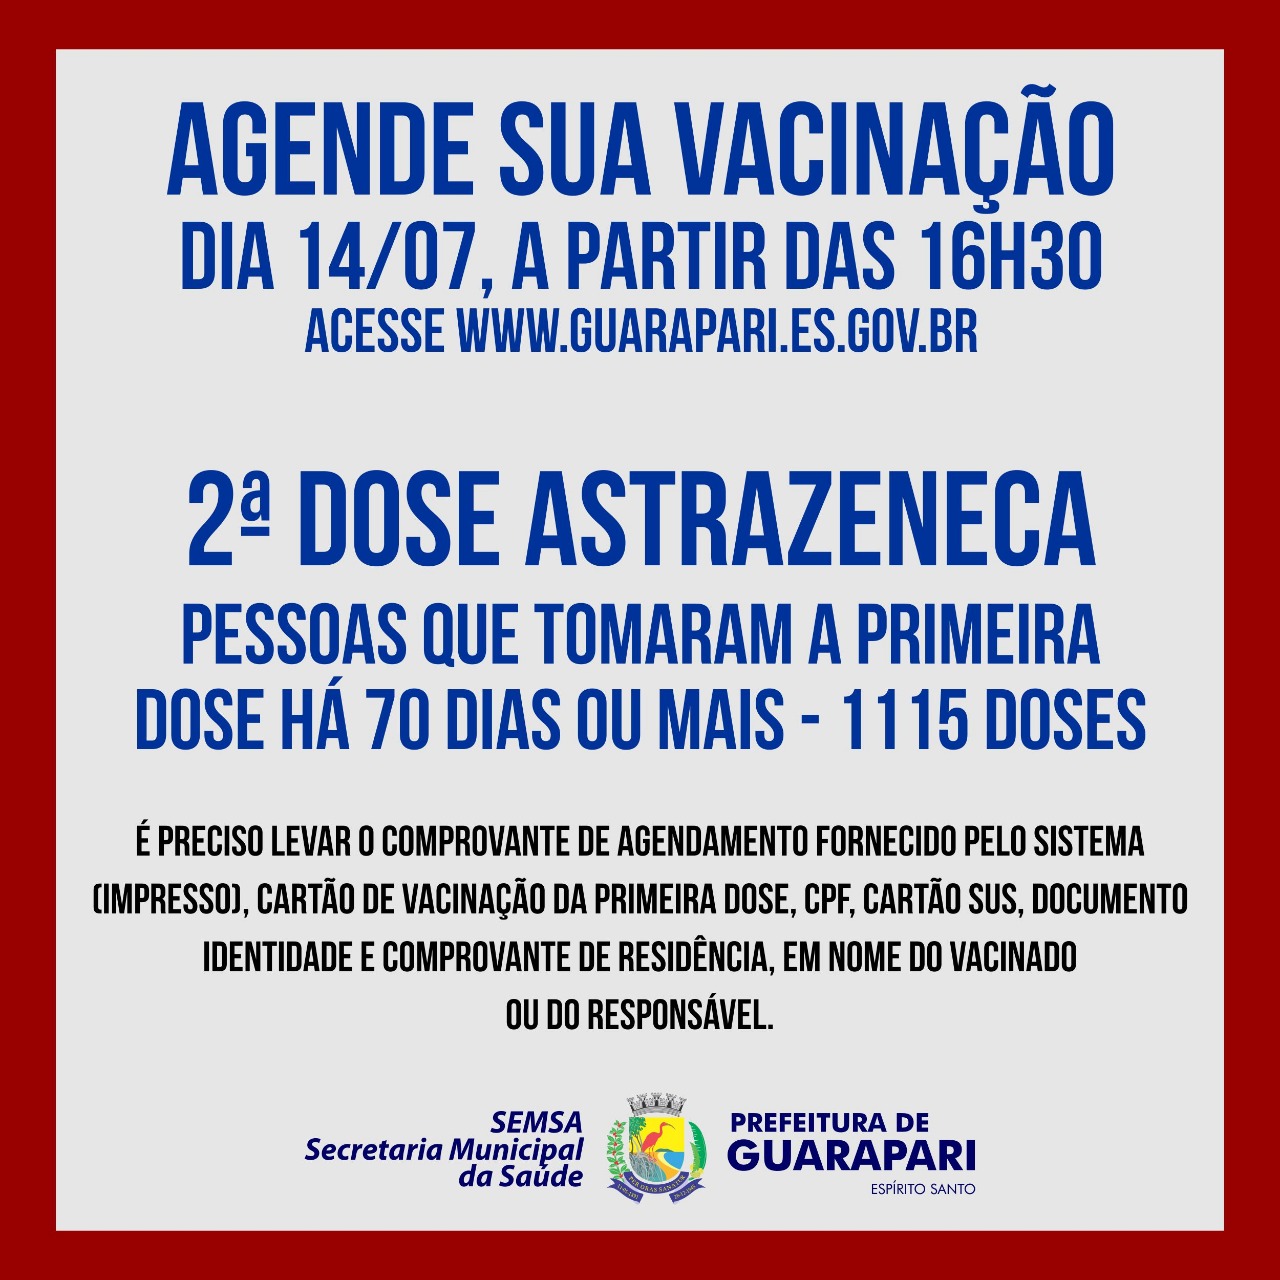 Prefeitura de Guarapari realiza agendamento para segunda dose de AstraZeneca